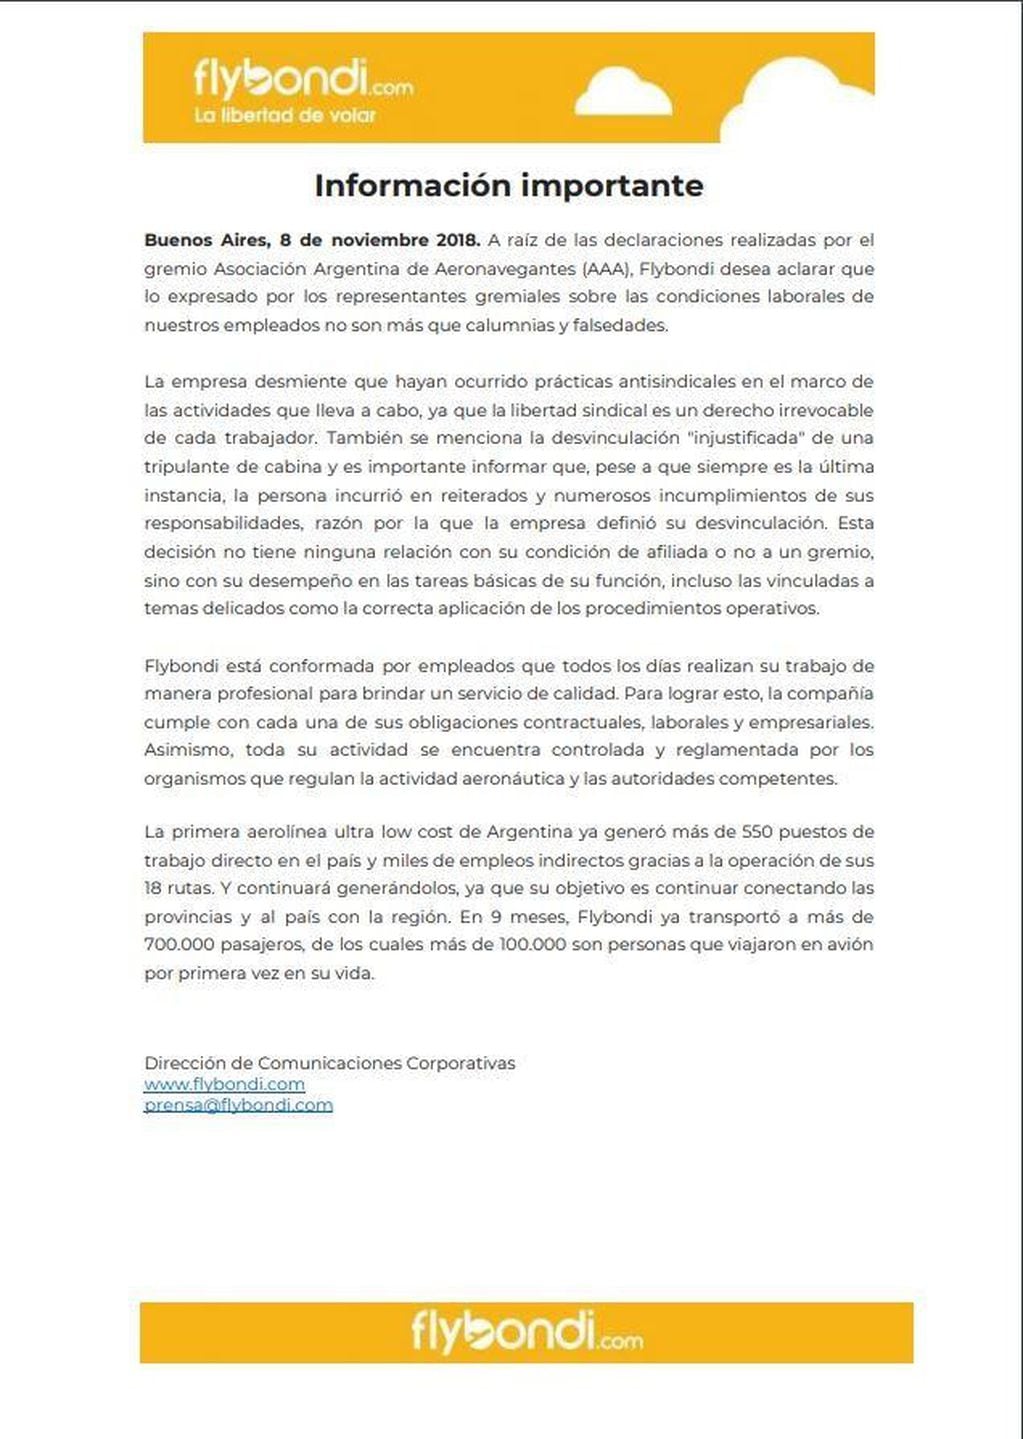 Comunicado de FlyBondi durante la protesta de empleados de Aerolíneas Argentinas y Austral.